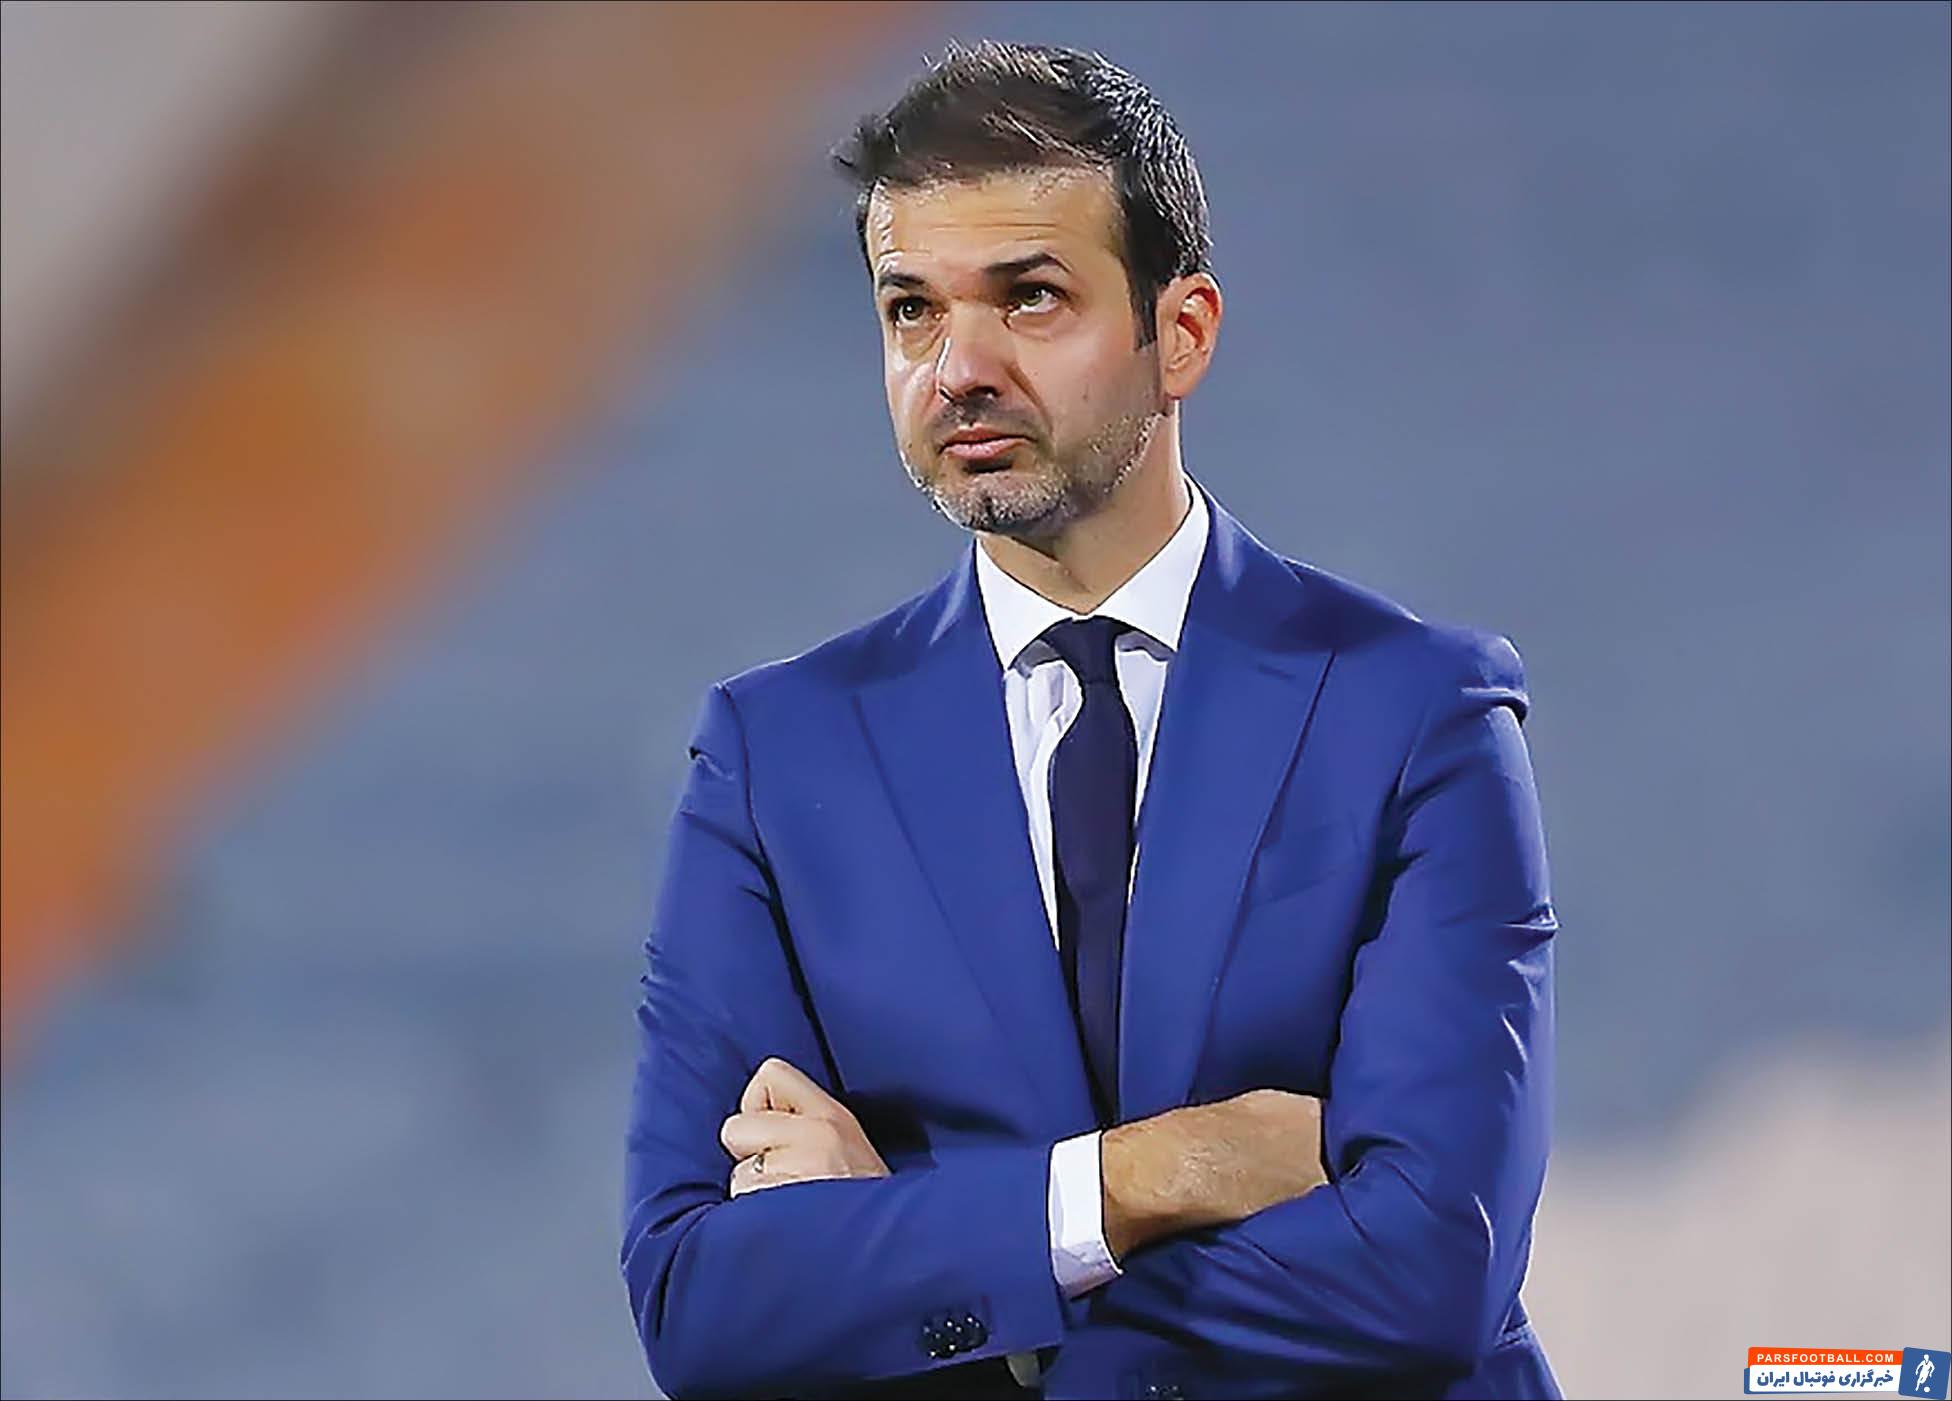 روزنامه العرب قطر مدعی شد که سبک ایتالیایی یک سبک شکست خورده در فوتبال قطر است و بر همین اساس مدعی شد که استراماچونی در این تیم موفق نمی شود.